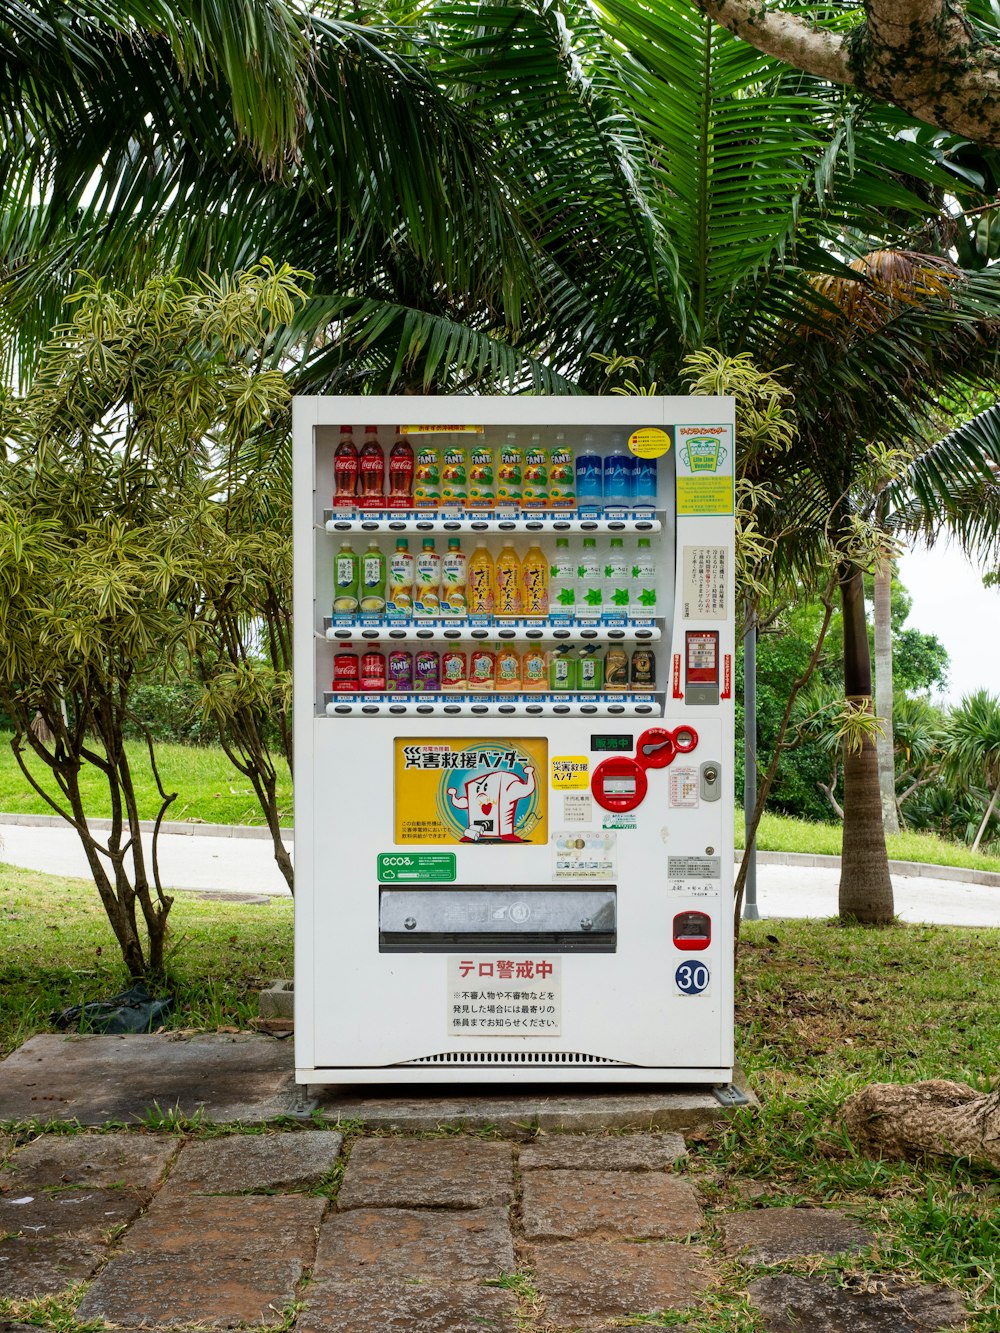 공원 한가운데에 있는 자판기